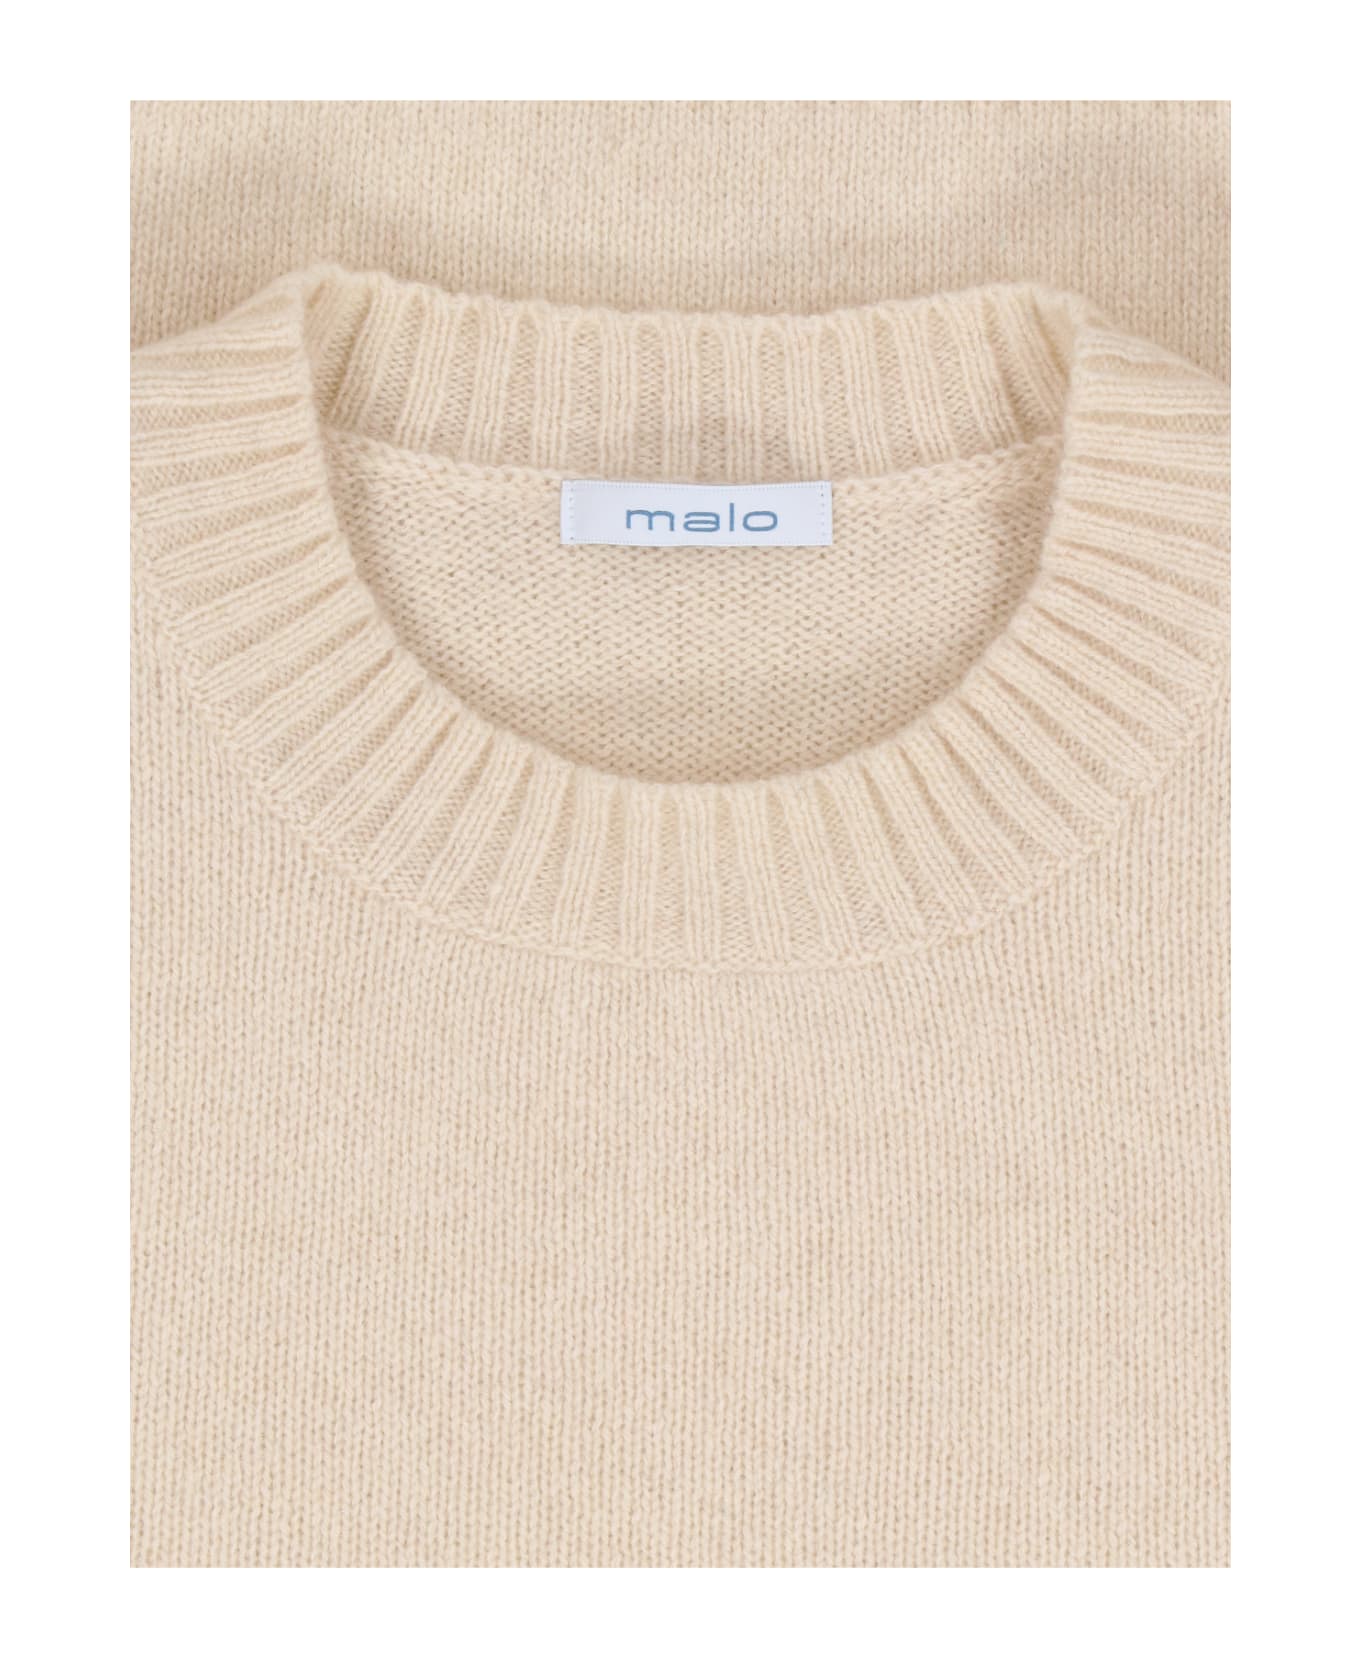 Malo Cashmere Sweater - Beige